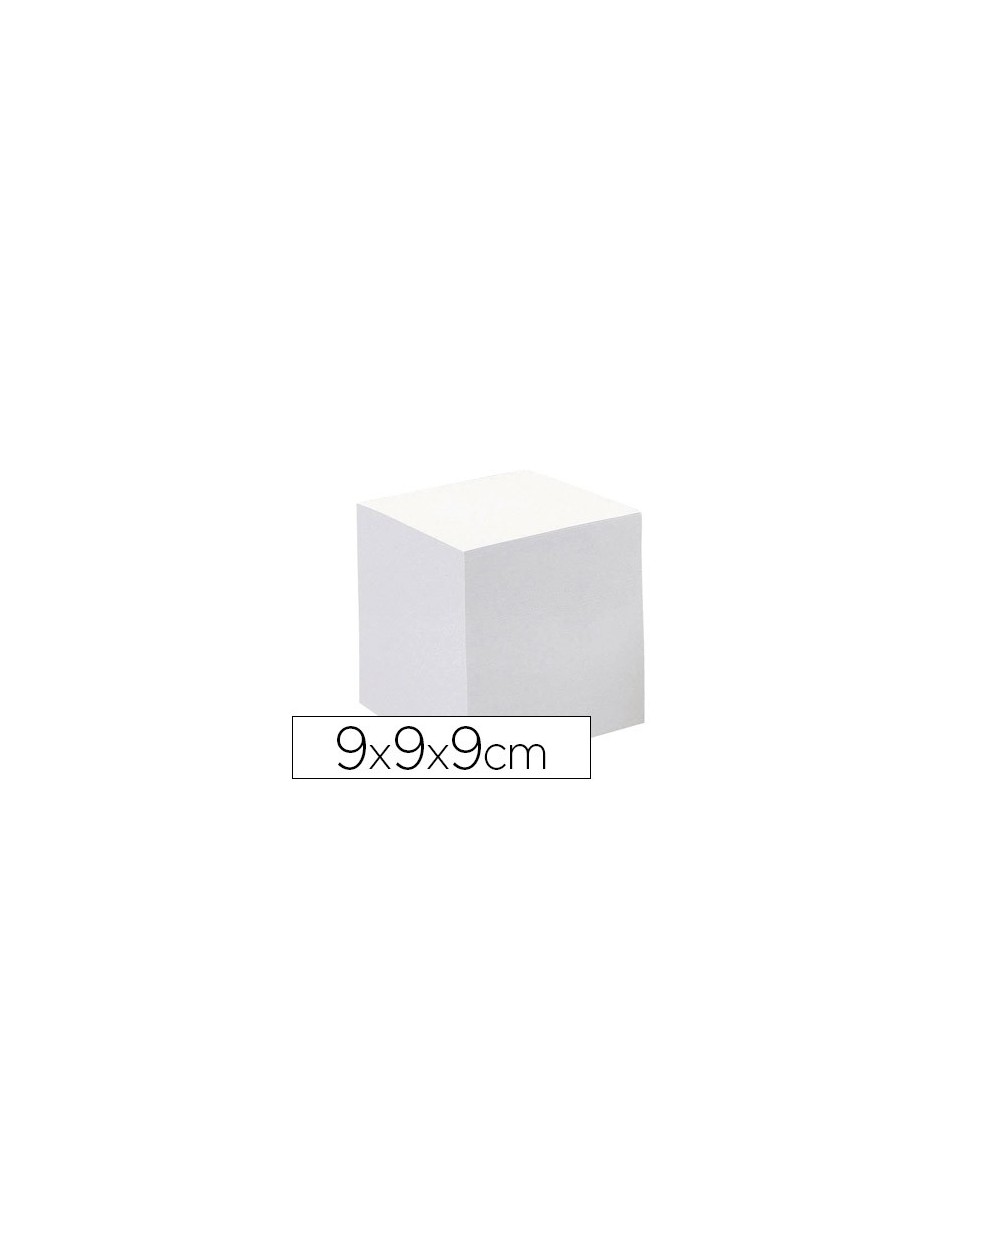 Taco papel quo vadis encolado blanco 680 hojas 100 reciclado 90 g m2 90x90x90 mm